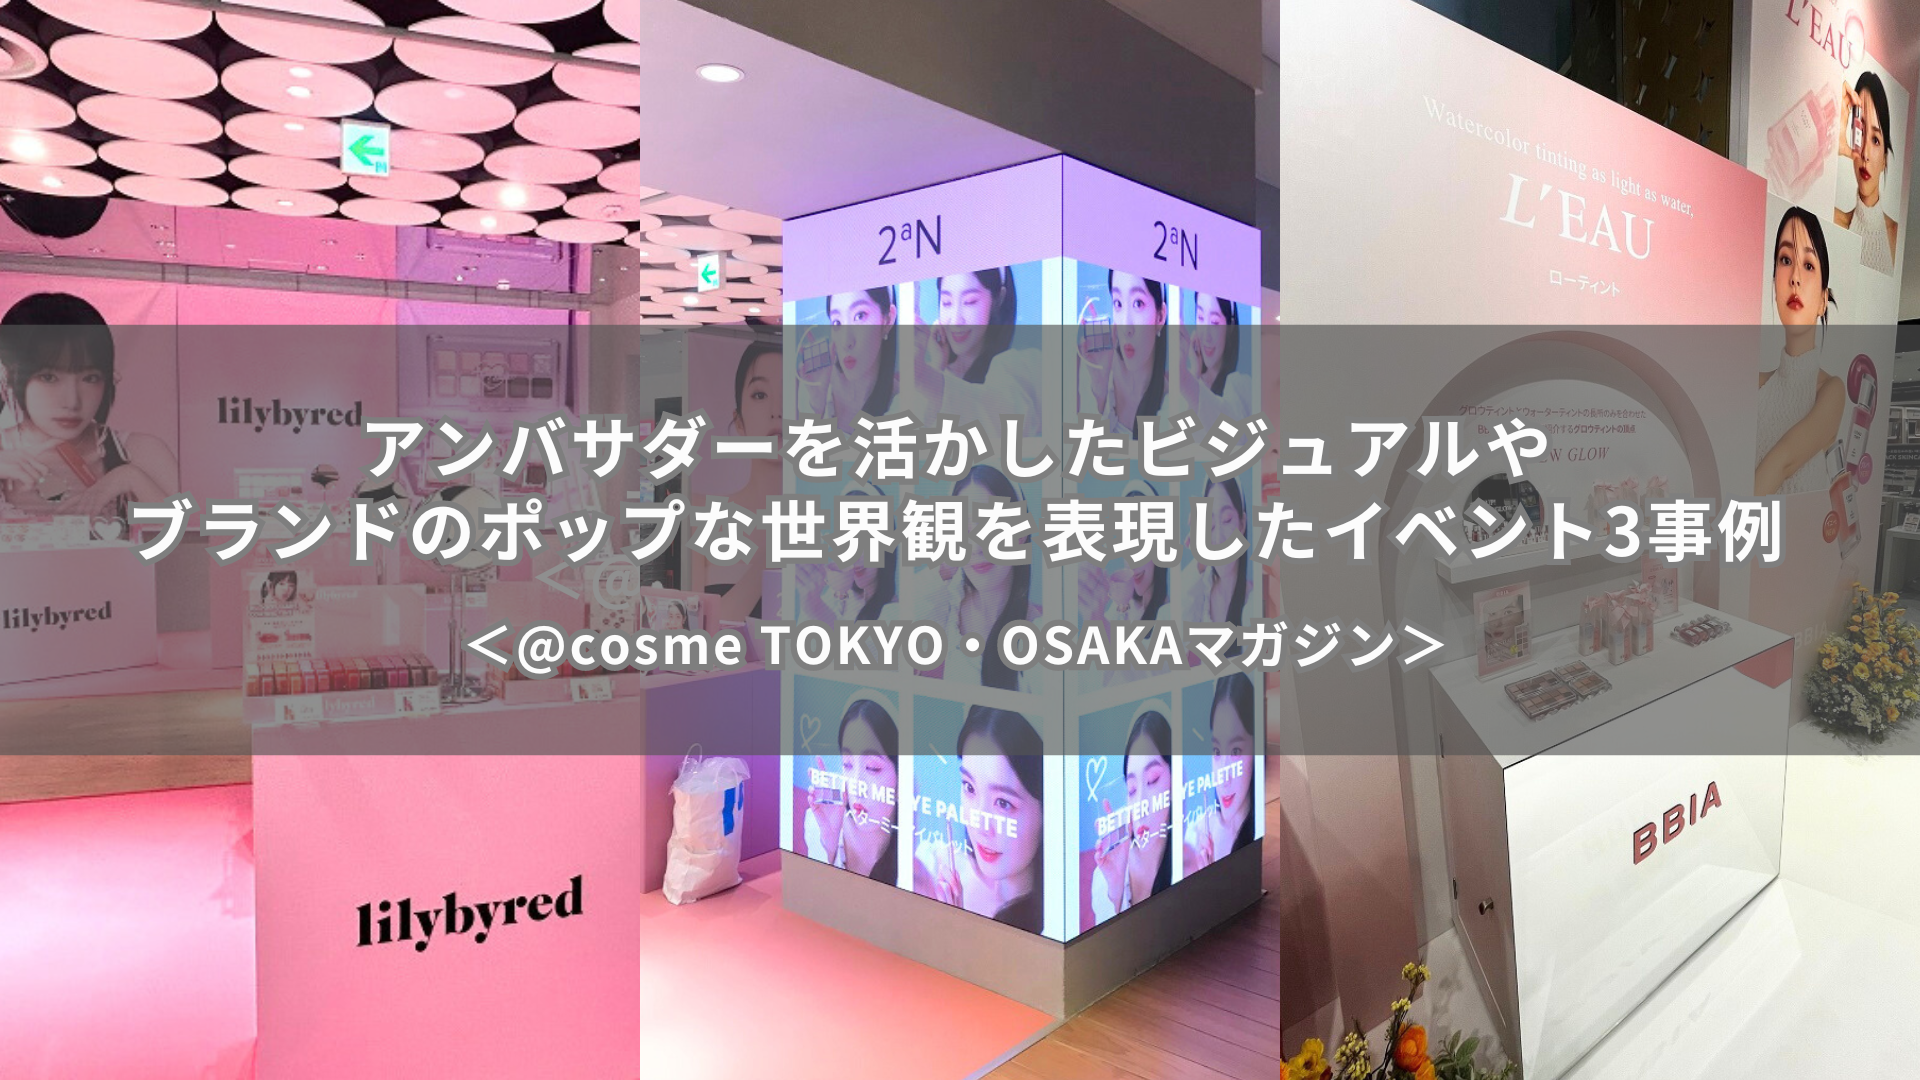 アンバサダーを活かしたビジュアルやブランドのポップな世界観を表現したイベント事例｜@cosme TOKYO・OSAKAマガジン サムネイル画像